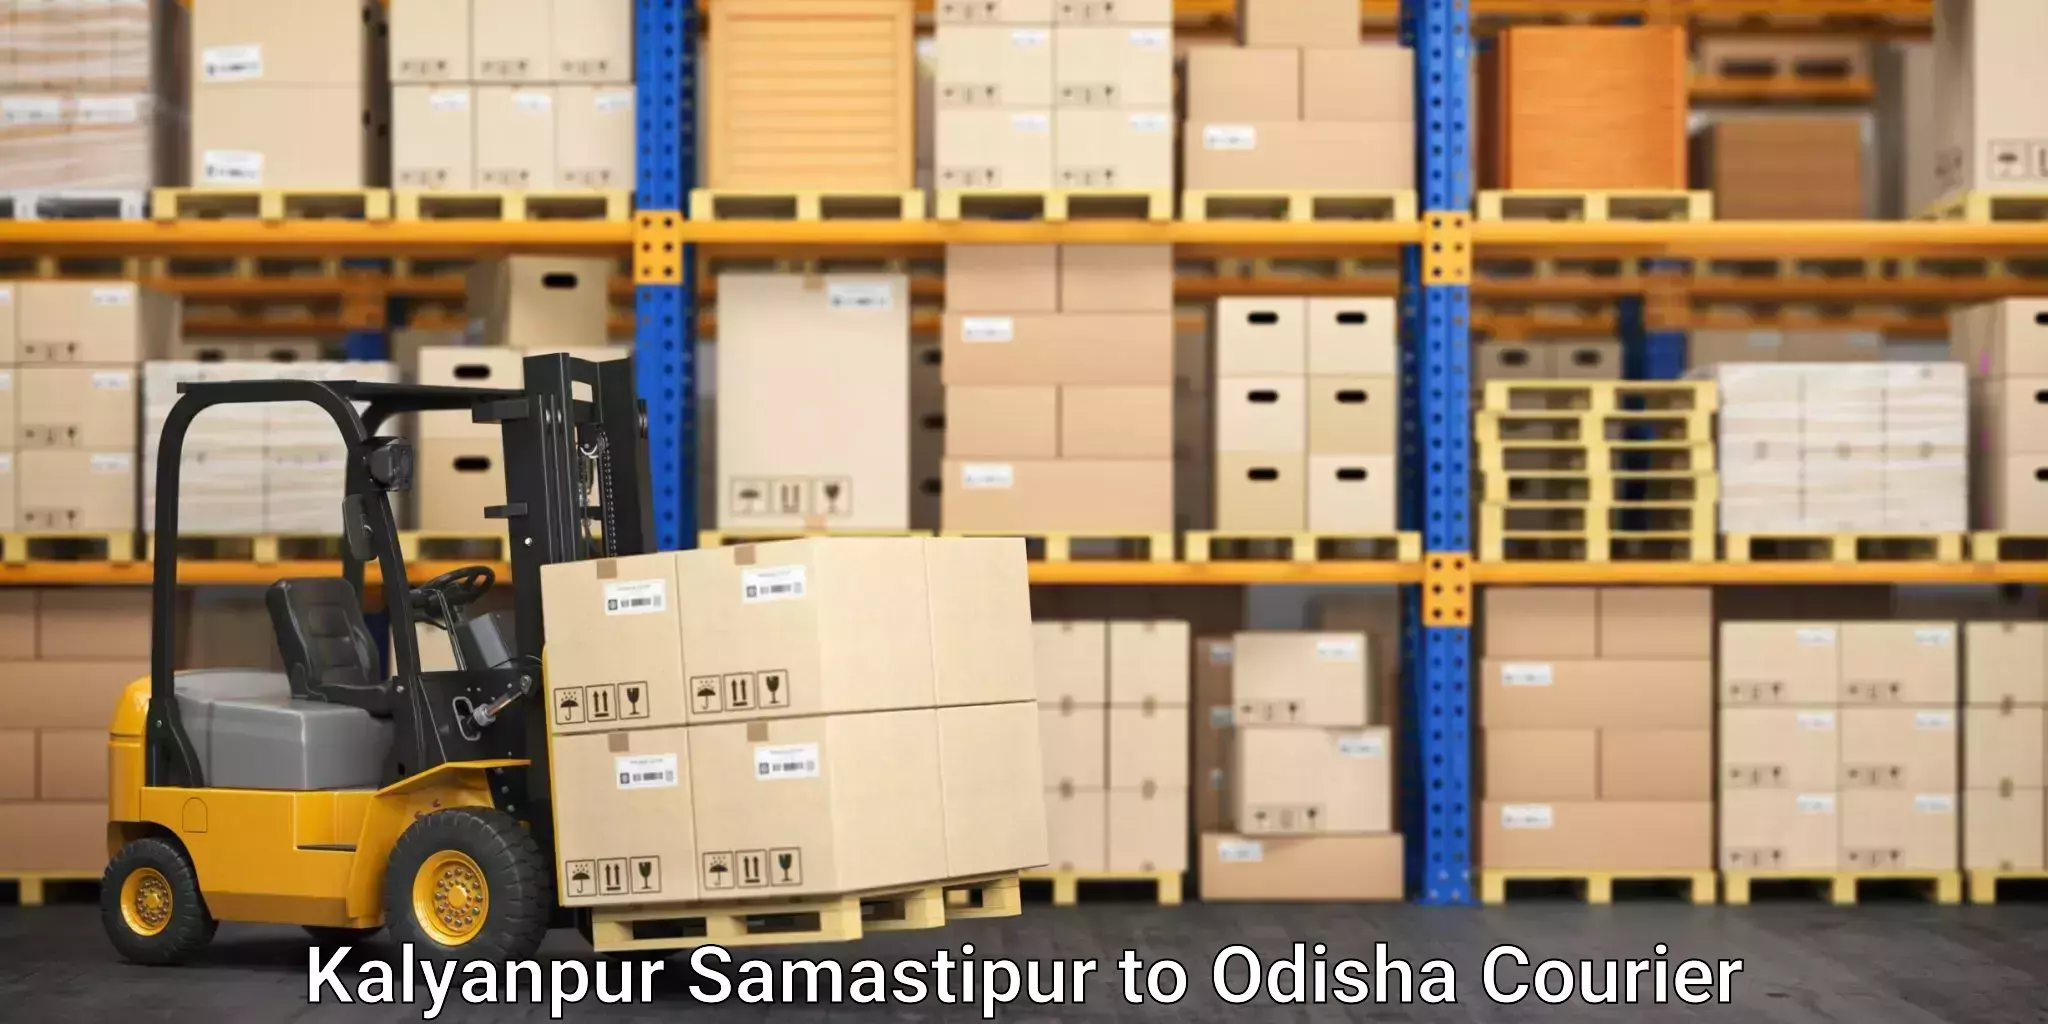 Furniture moving assistance Kalyanpur Samastipur to Dhenkanal